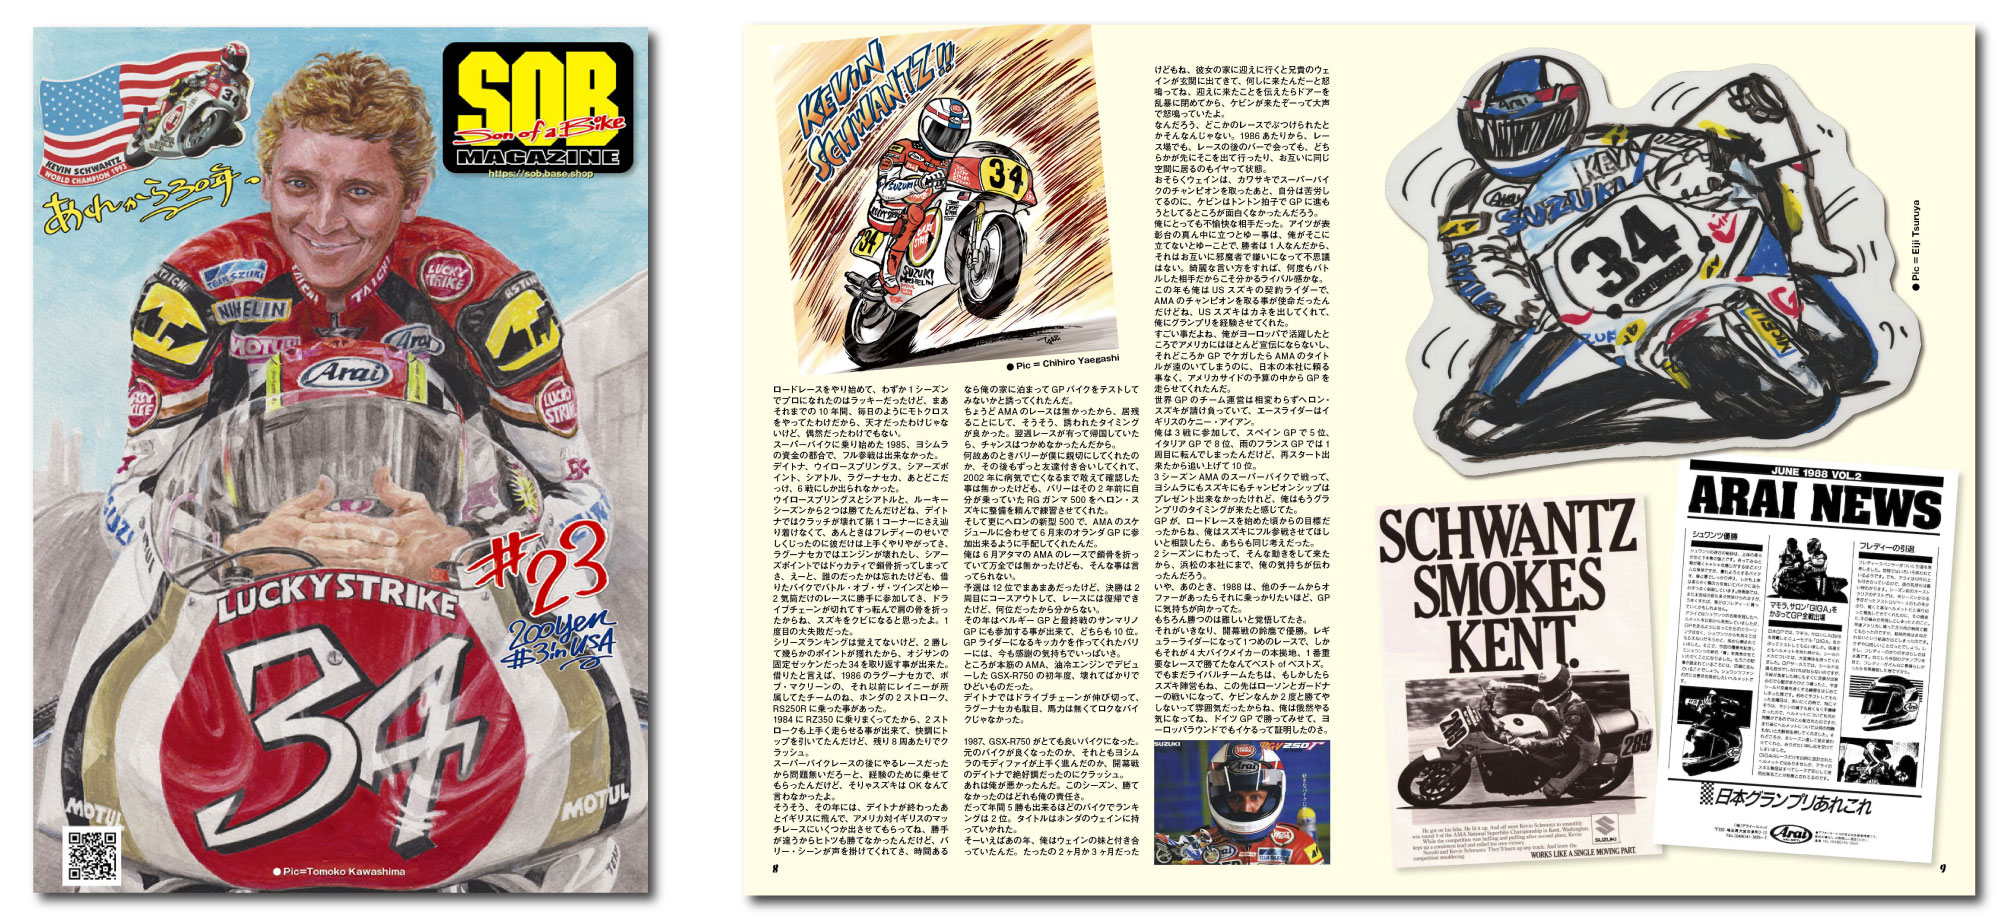 SOBマガジン #023　編集長 中尾省吾 今回の特集は1993年ロードレース世界選手権500ccチャンピオン。ケビン・シュワンツ選手のインタビューです。